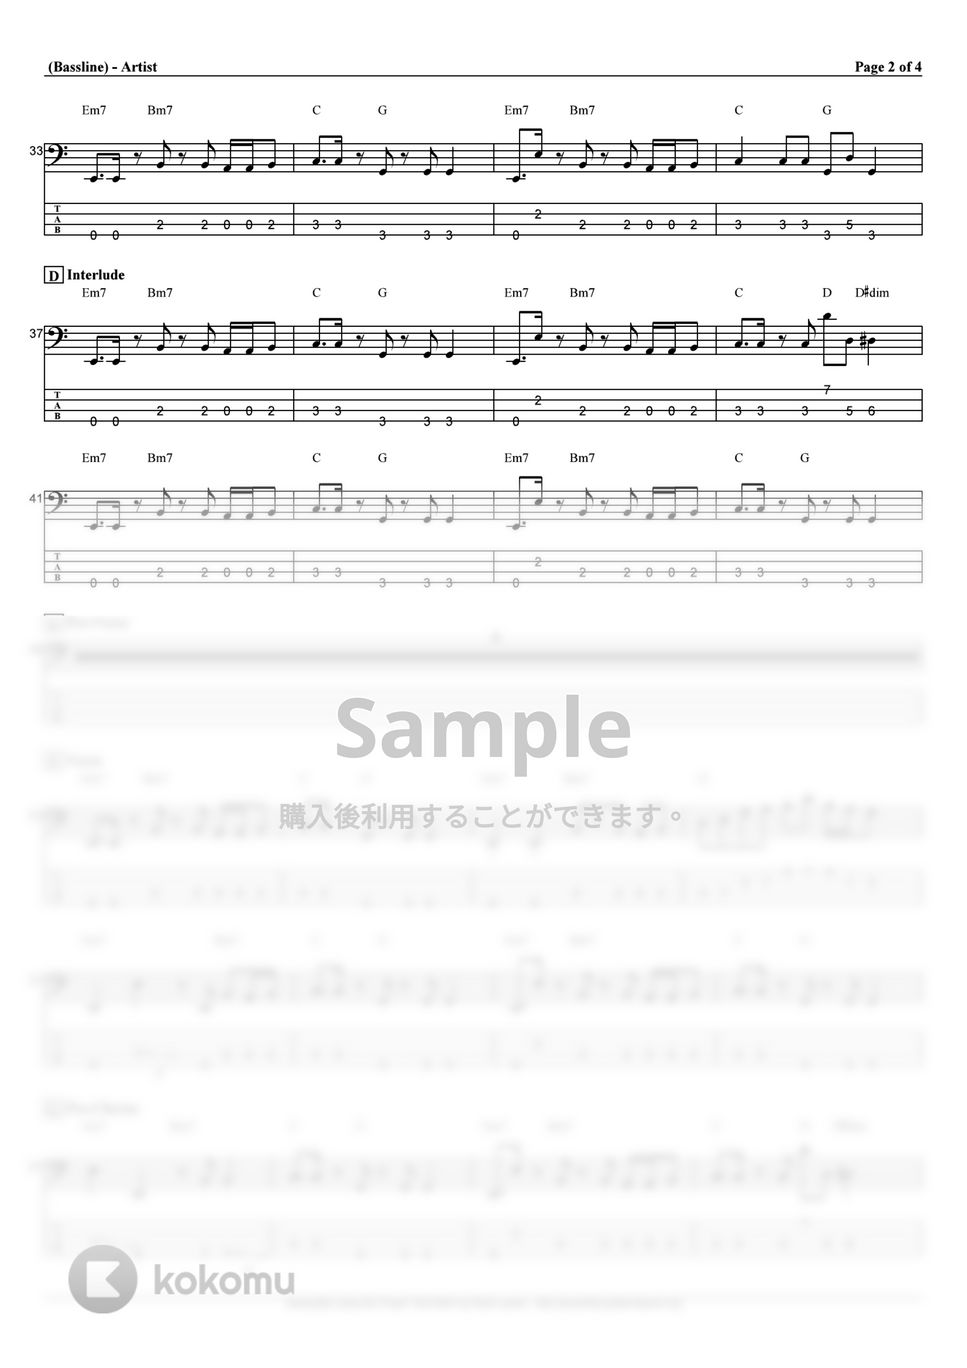 秋山黄色 - 月と太陽だけ (ベース Tab譜 4弦) by T's bass score